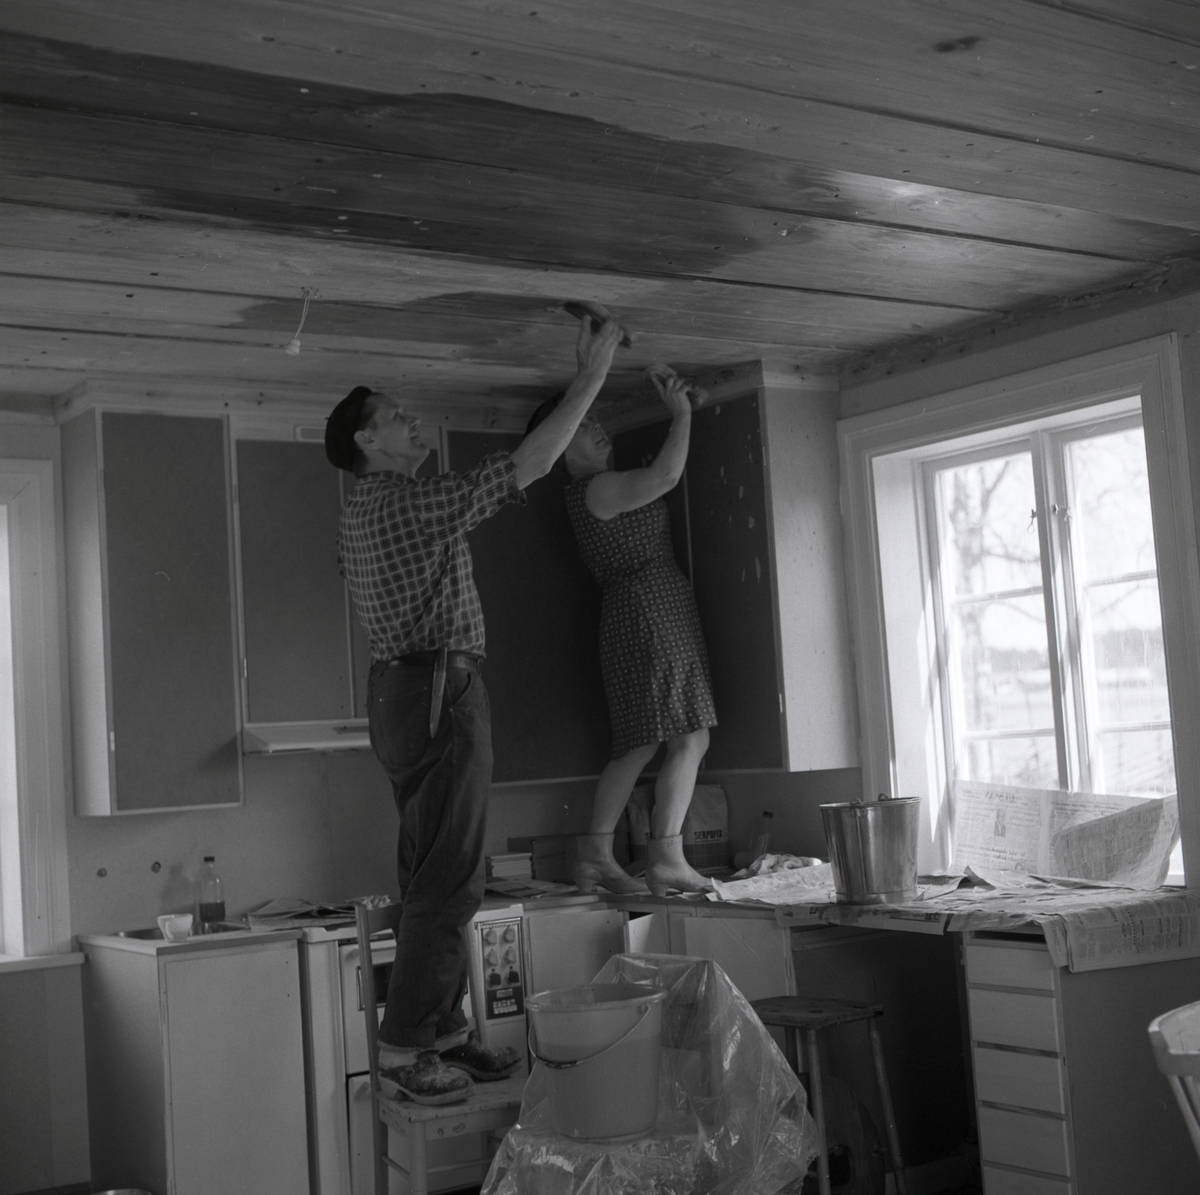 Hilding och hans fru skurar taket i köket vid gården Sunnanåker, 1967-1968.